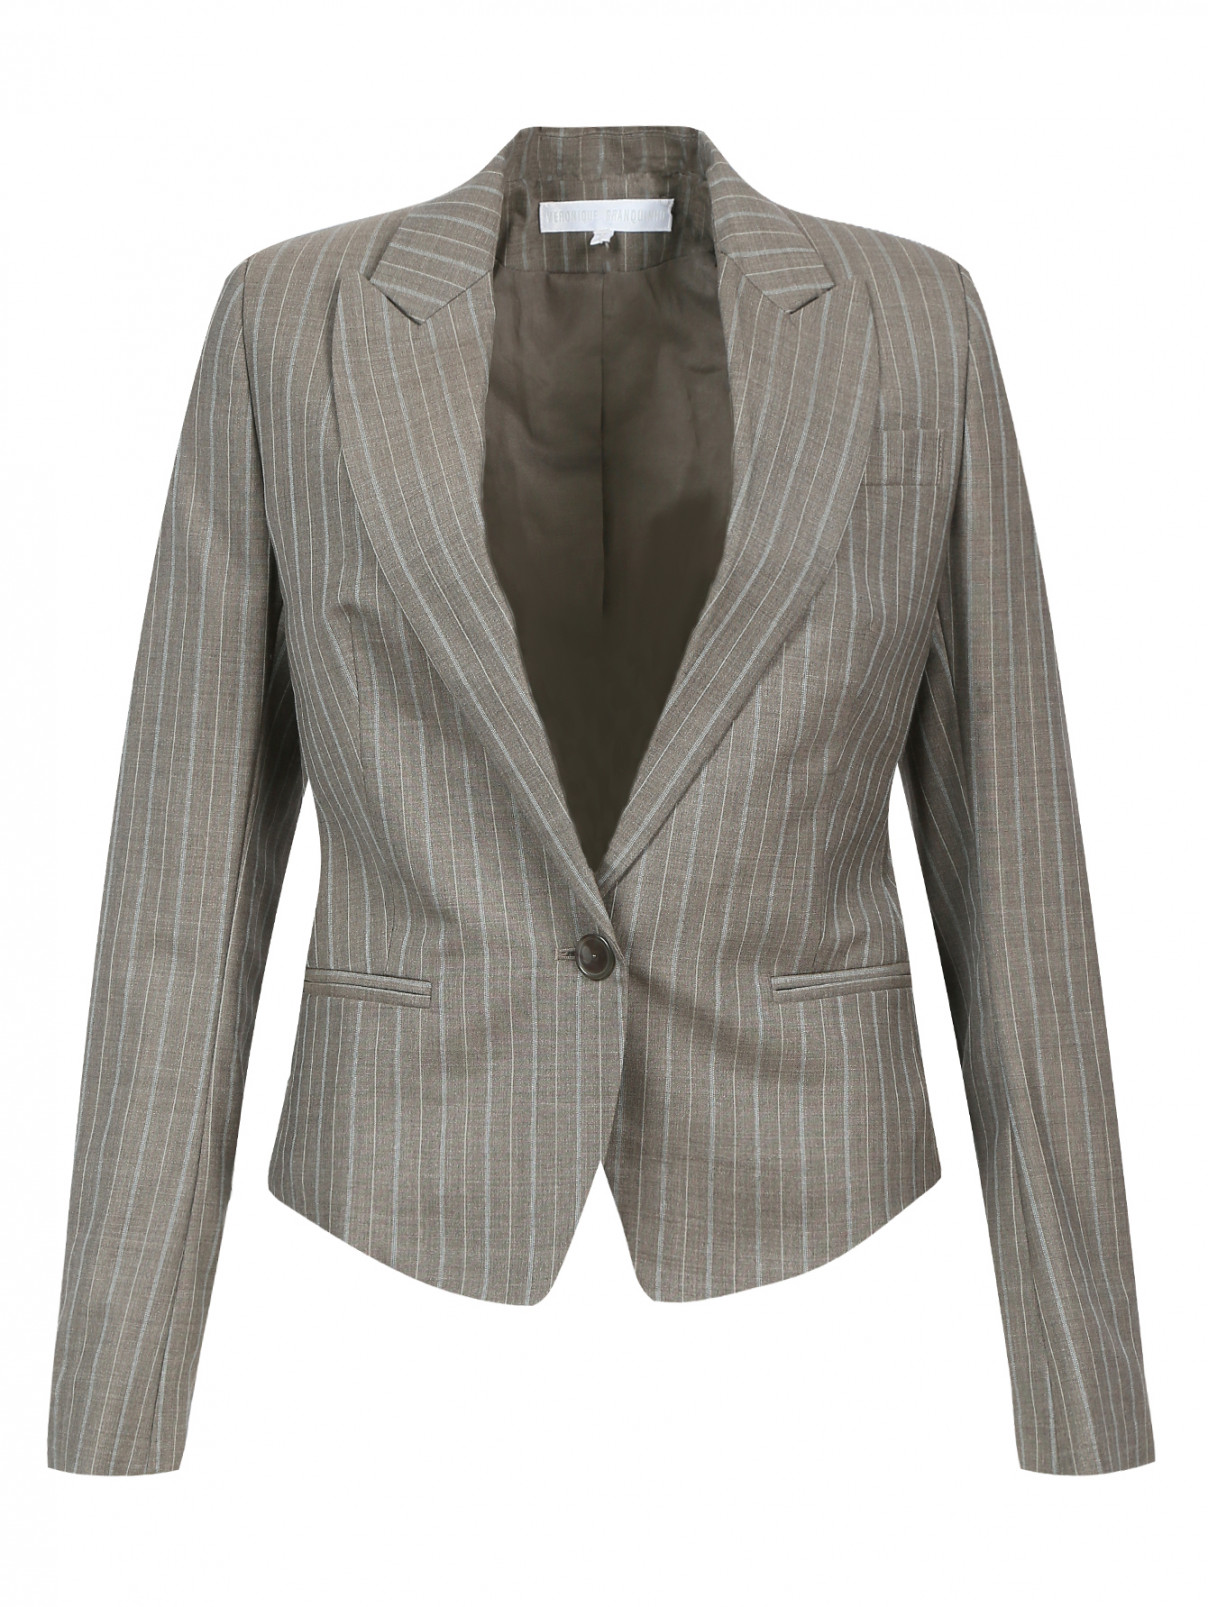 Пиджак из шерсти с узором "полоска" Veronique Branquinho  –  Общий вид  – Цвет:  Серый